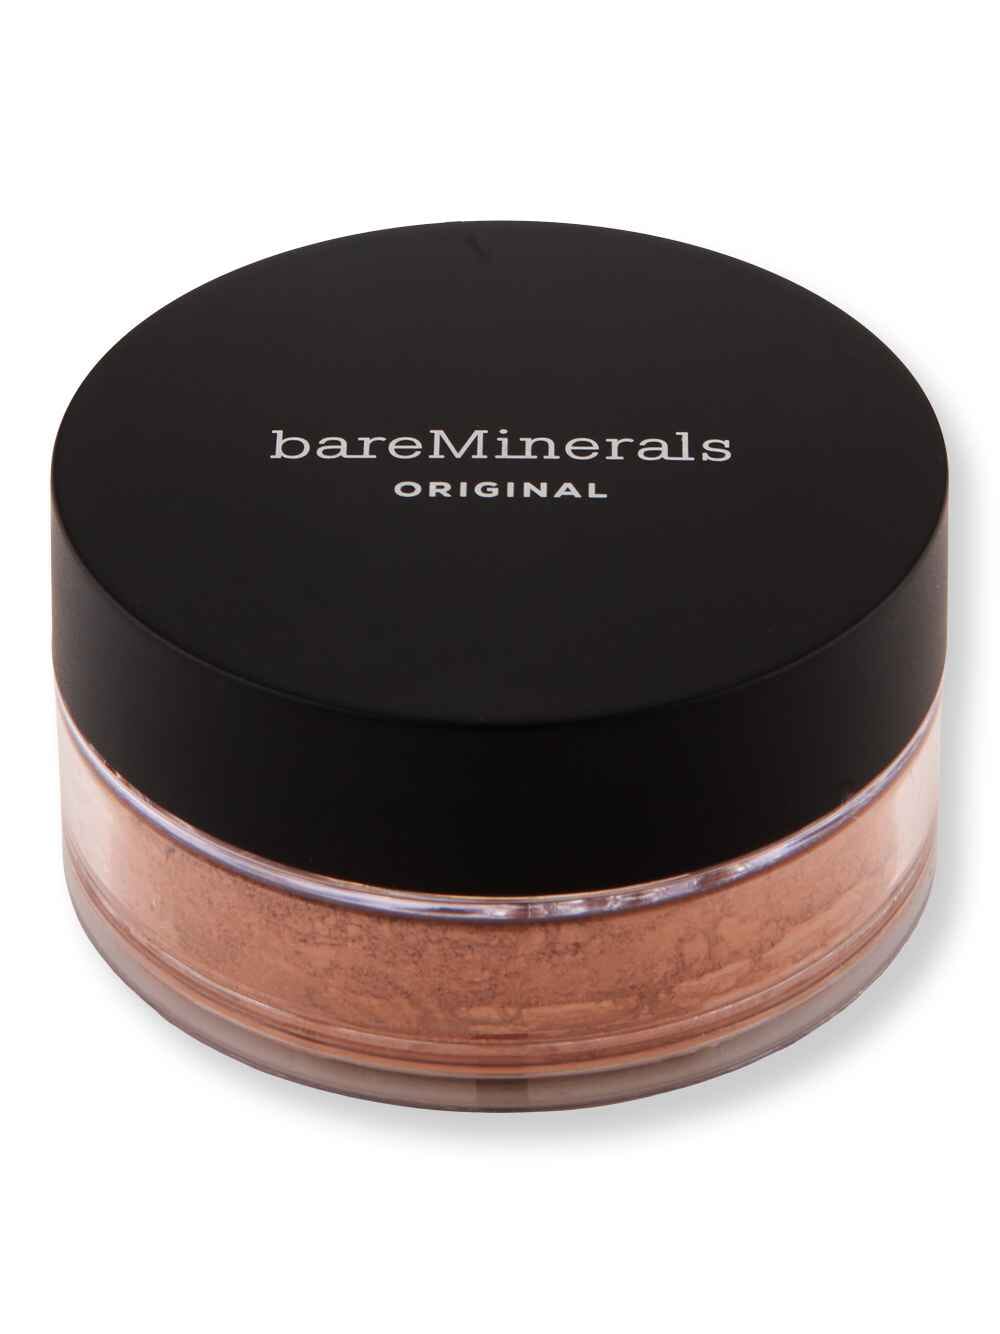 Bareminerals Bareminerals Original Loose Powder Foundation SPF 15 Neutral Dark 24 0.28 oz8 g Tinted Moisturizers & Foundations 